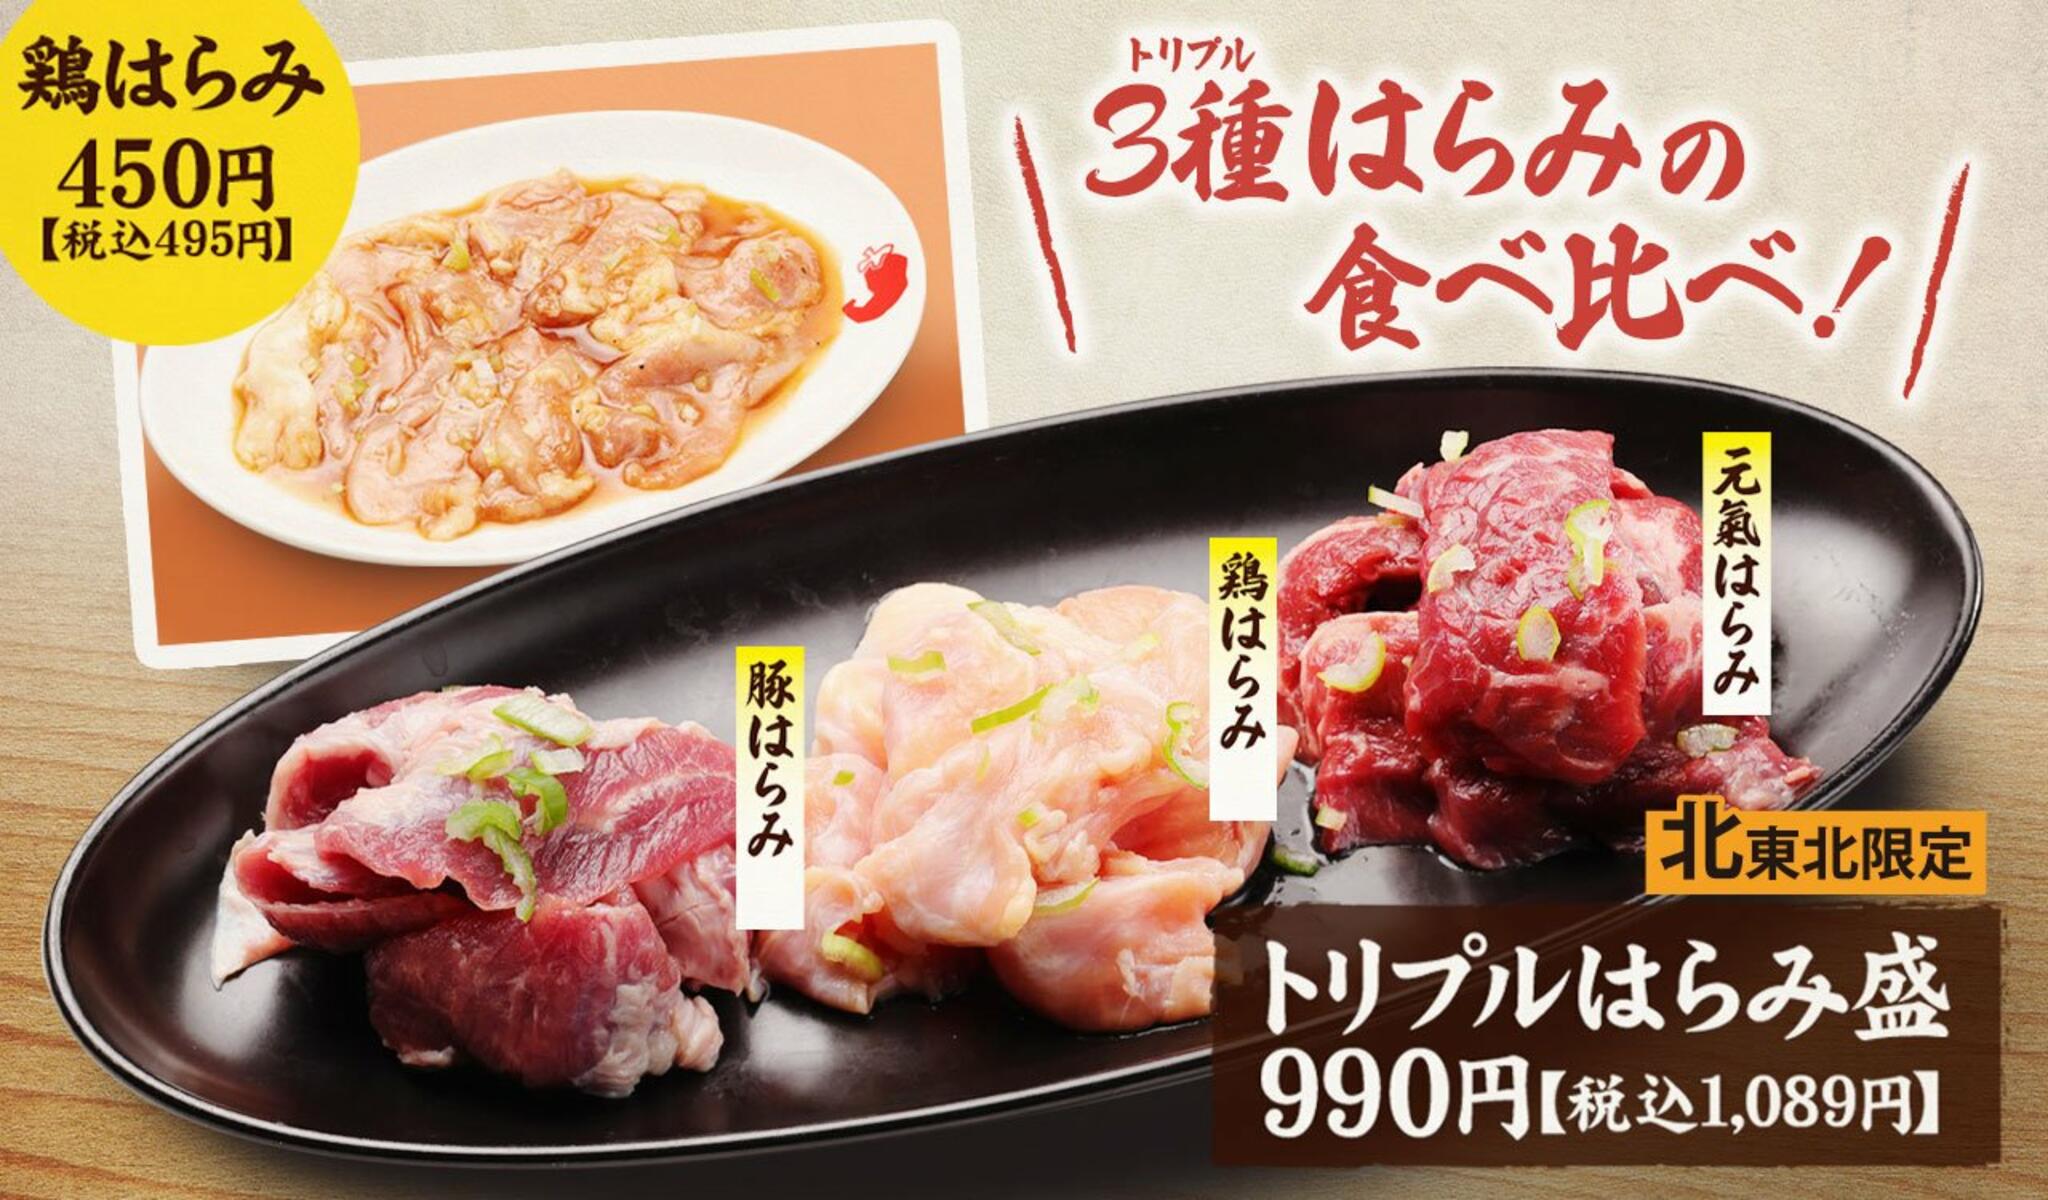 焼肉冷麺やまなか家 上田バイパス店からのお知らせ(【期間限定おすすめメニュー】)に関する写真